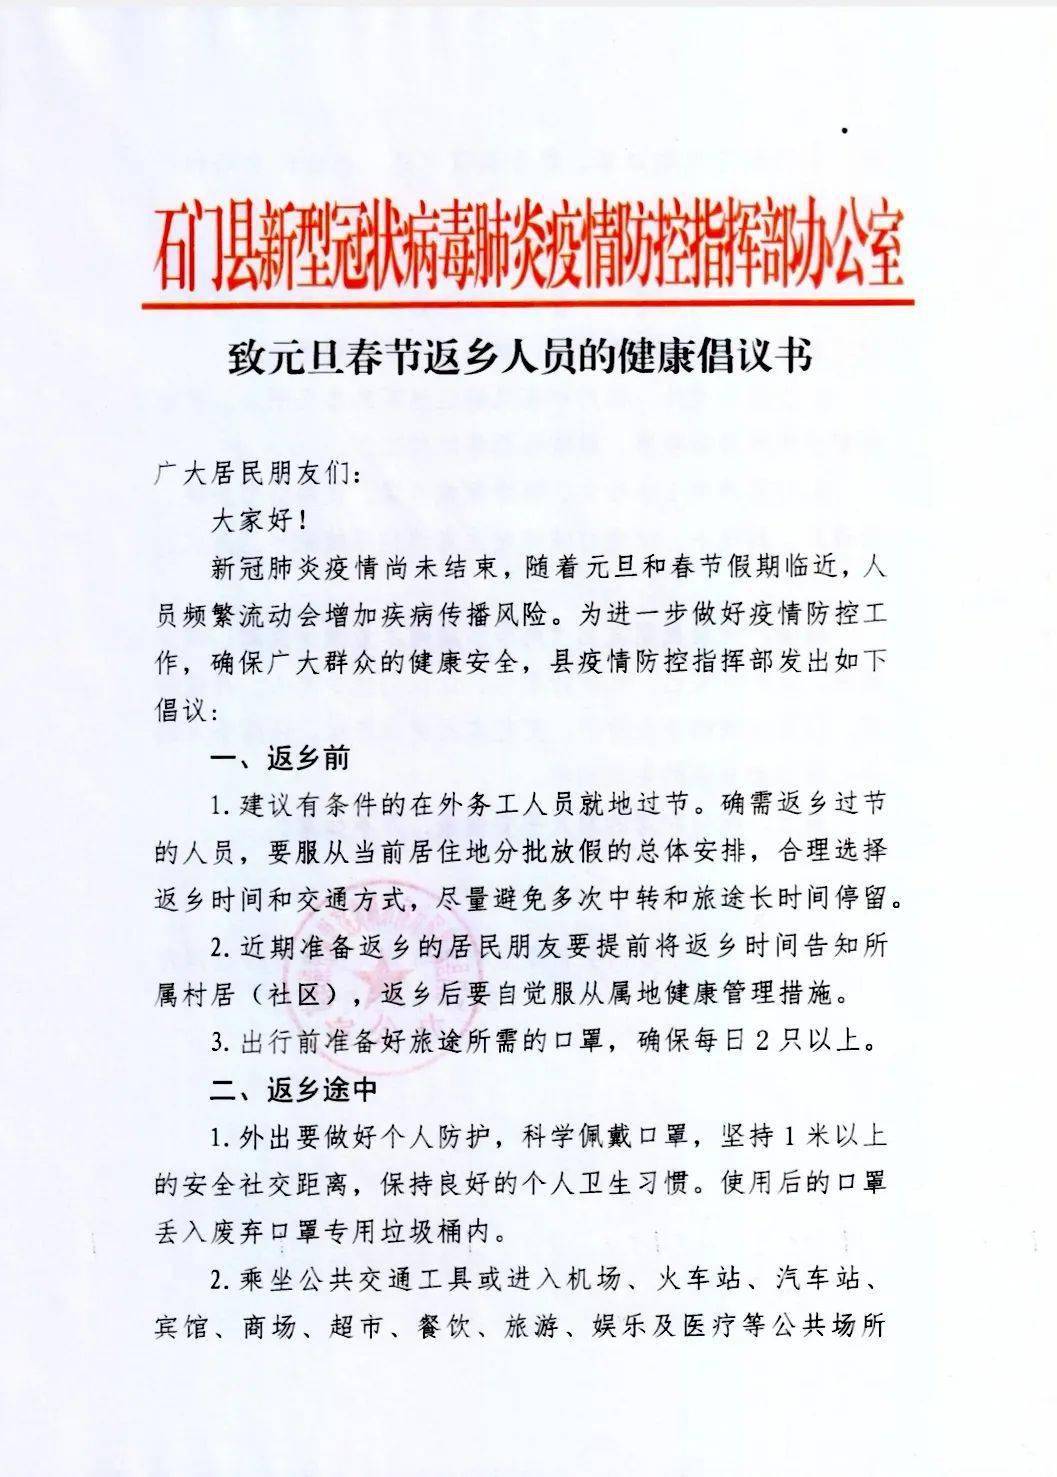 石门县新冠疫情防控指挥部 致元旦春节返乡人员的健康倡议书 